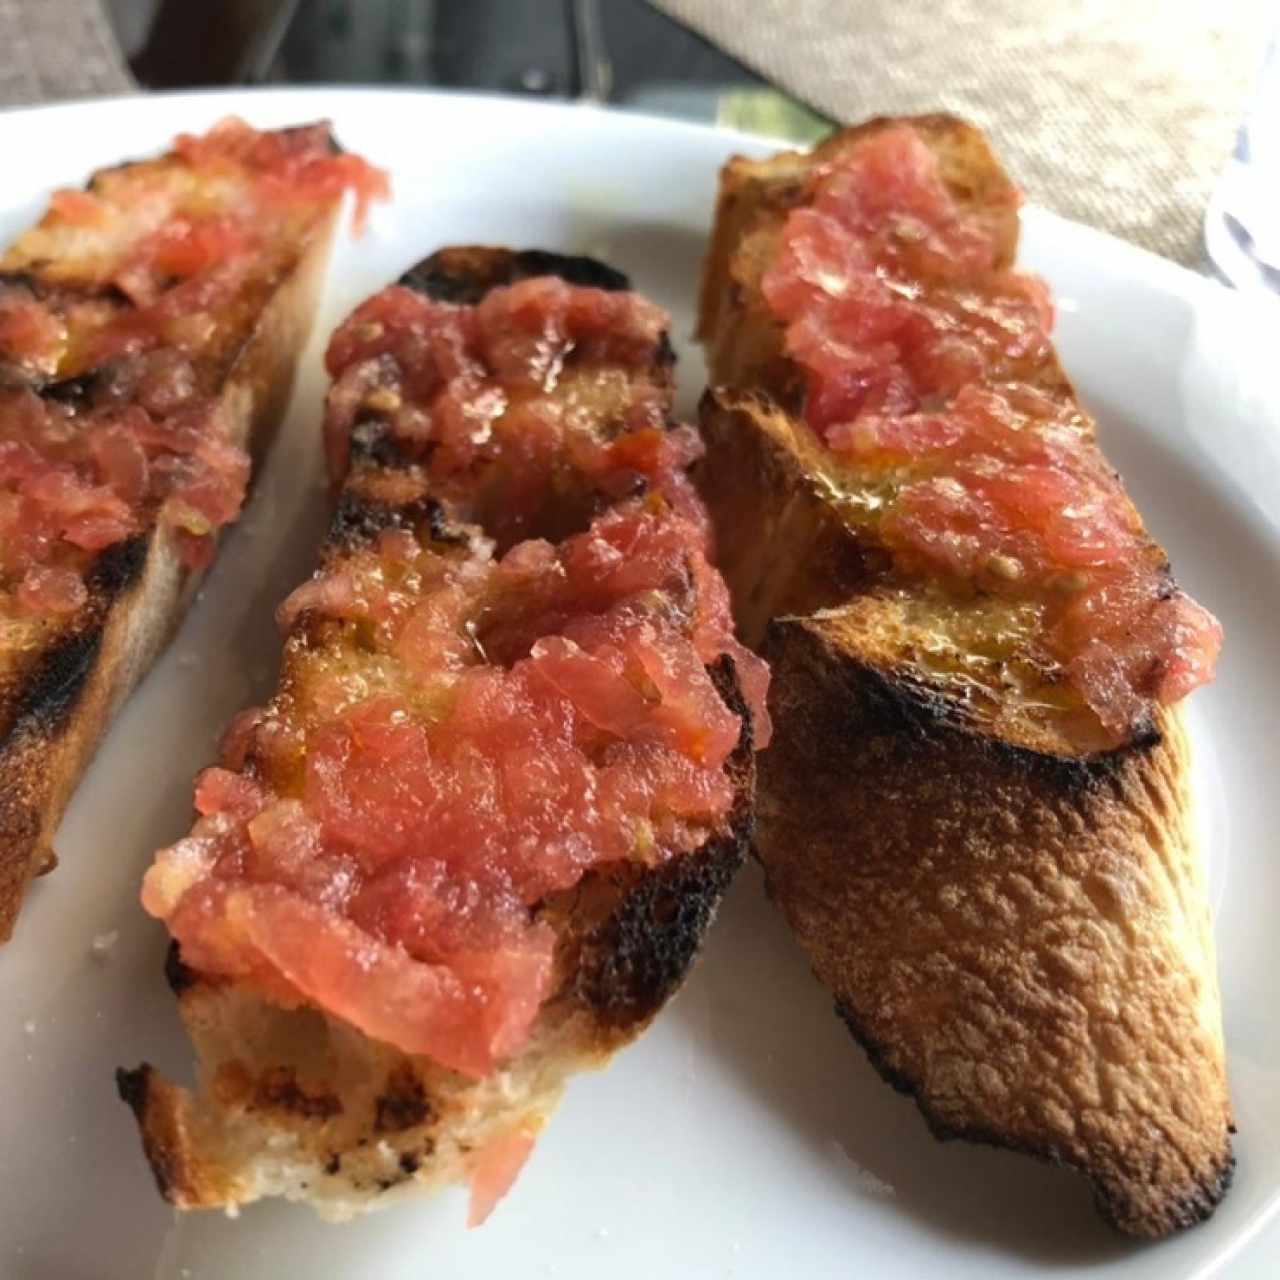 Pan de tomate...cortesía de la casa